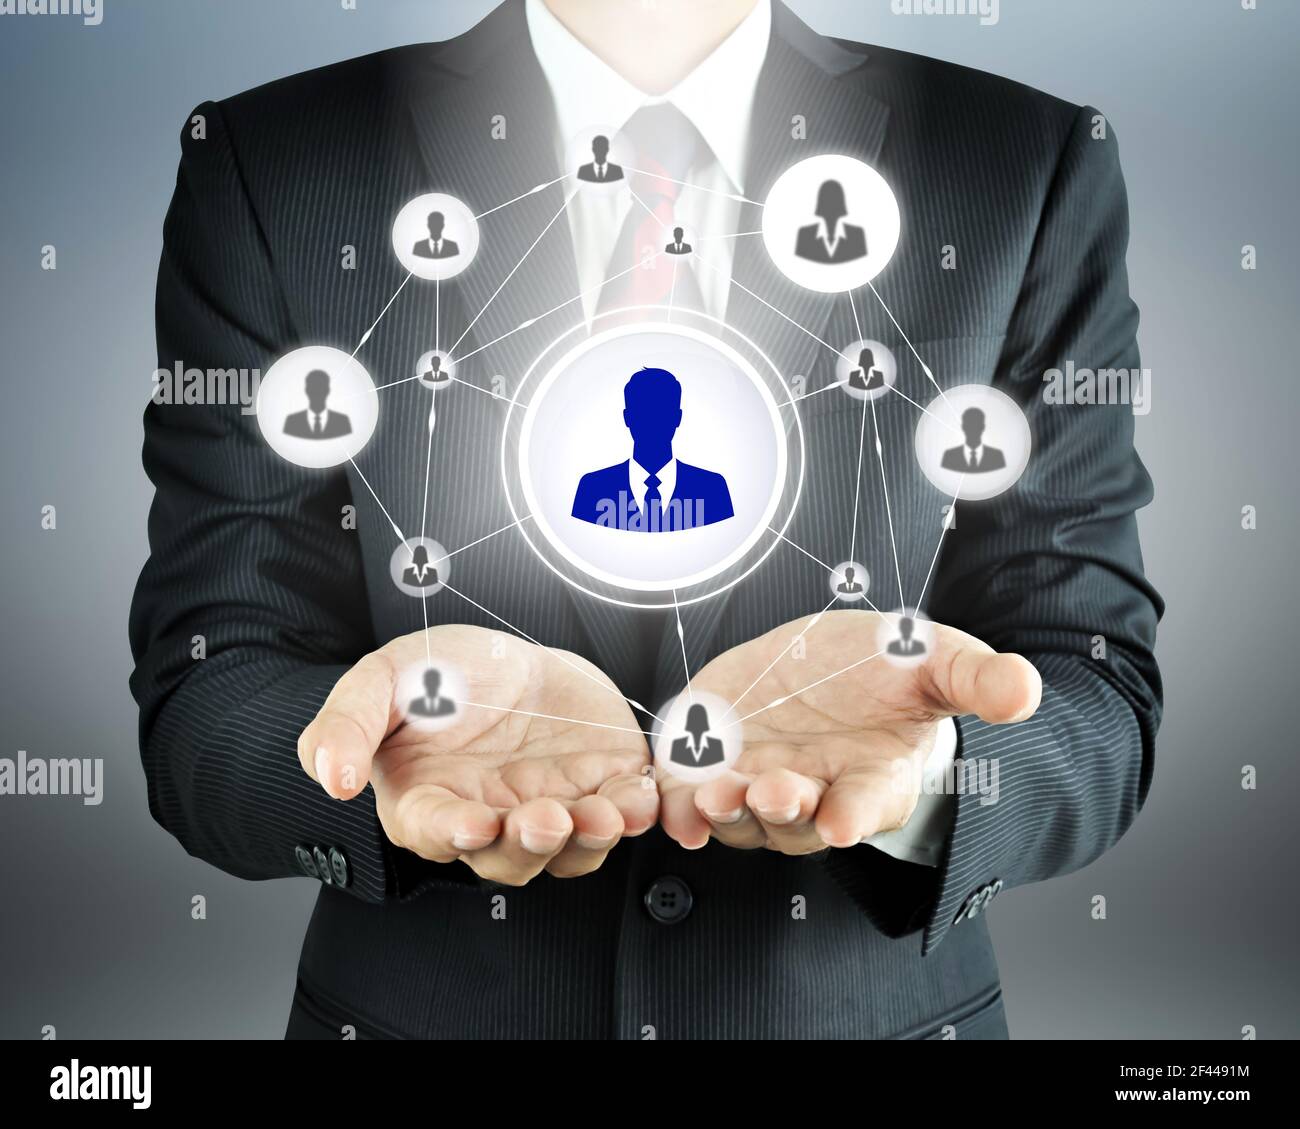 La rete di icone di uomini d'affari che trasportano le mani - HR, HRM, MLM, lavoro di squadra & concetto di leadership Foto Stock